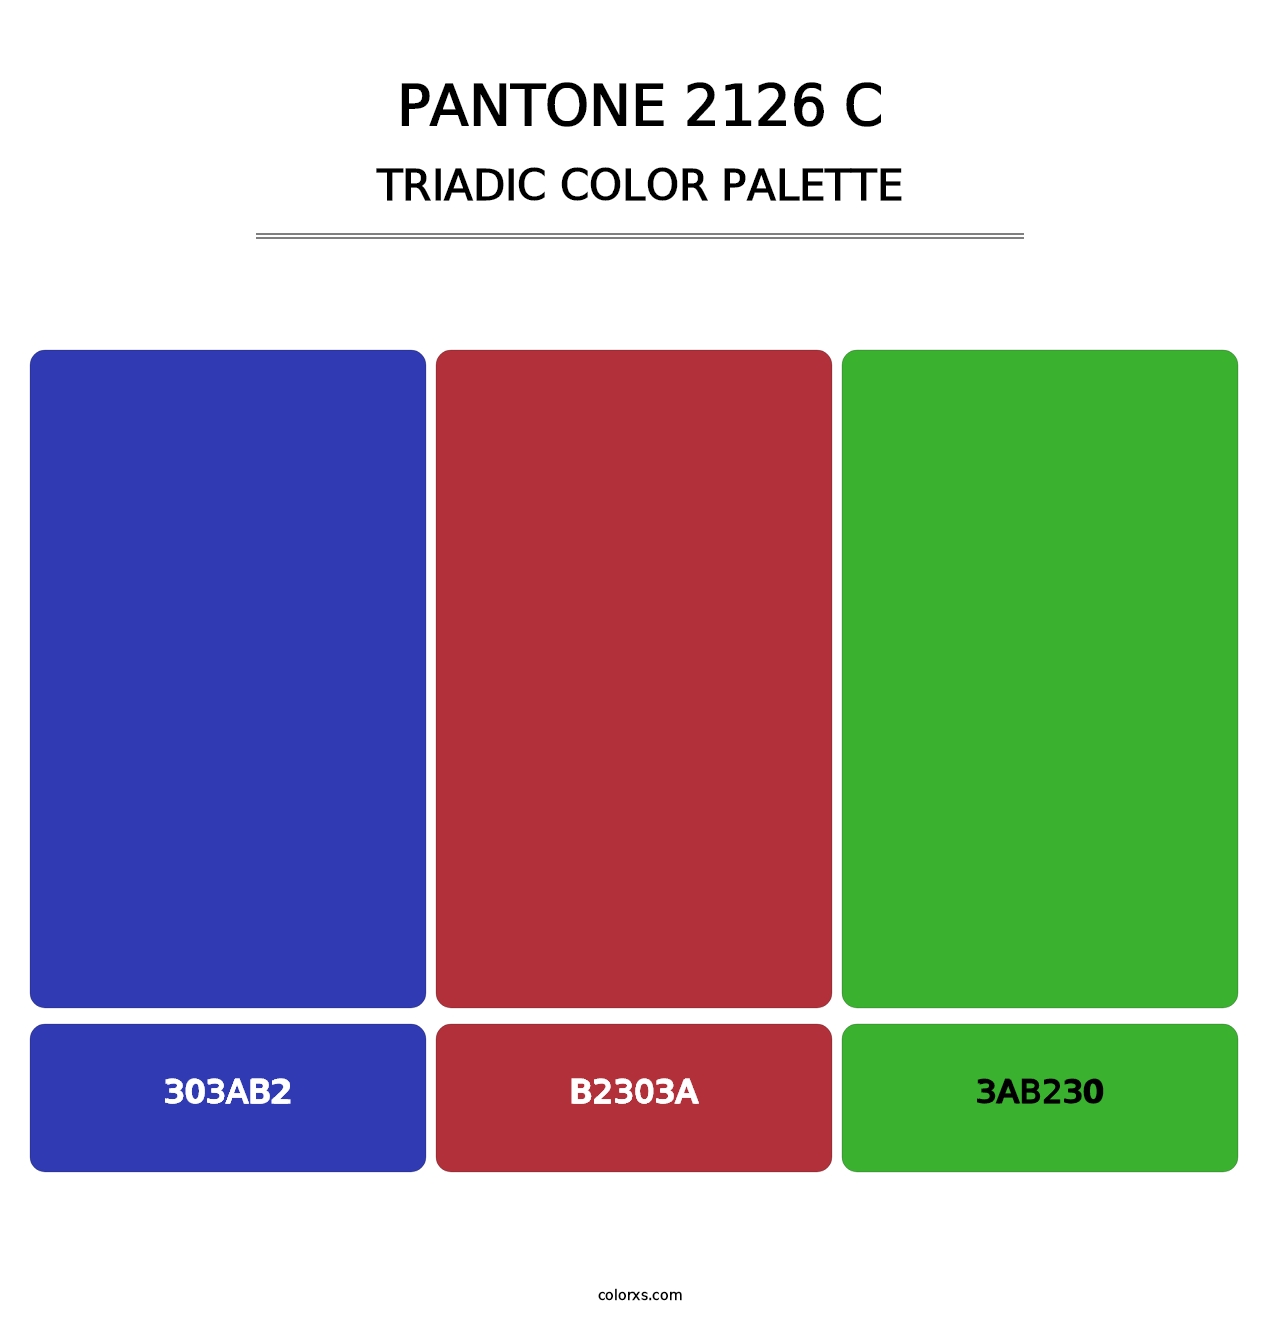 PANTONE 2126 C - Triadic Color Palette